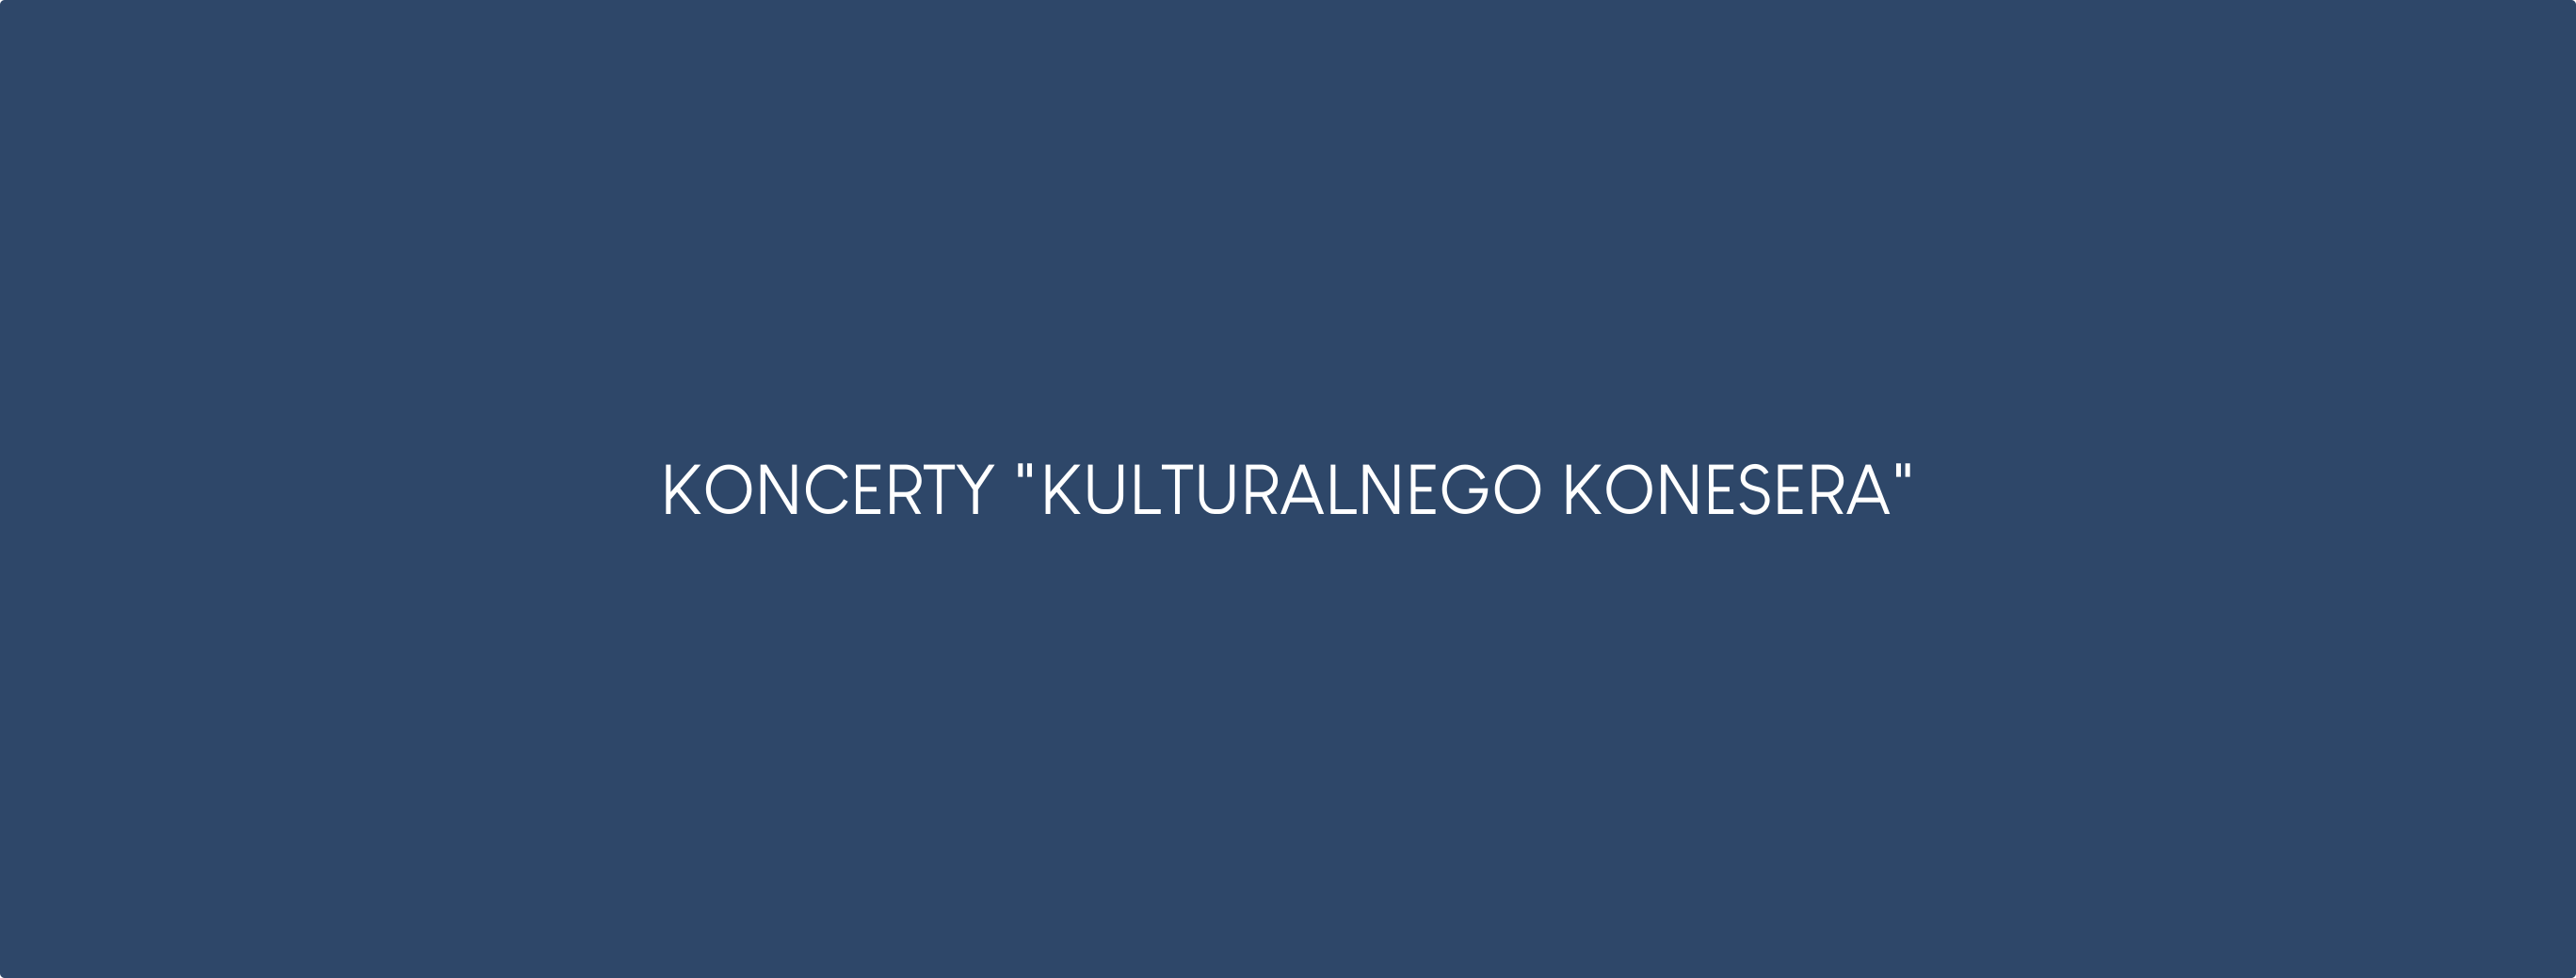 Polskie Stowarzyszenie Animatorów Kultury Kulturalny Koneser